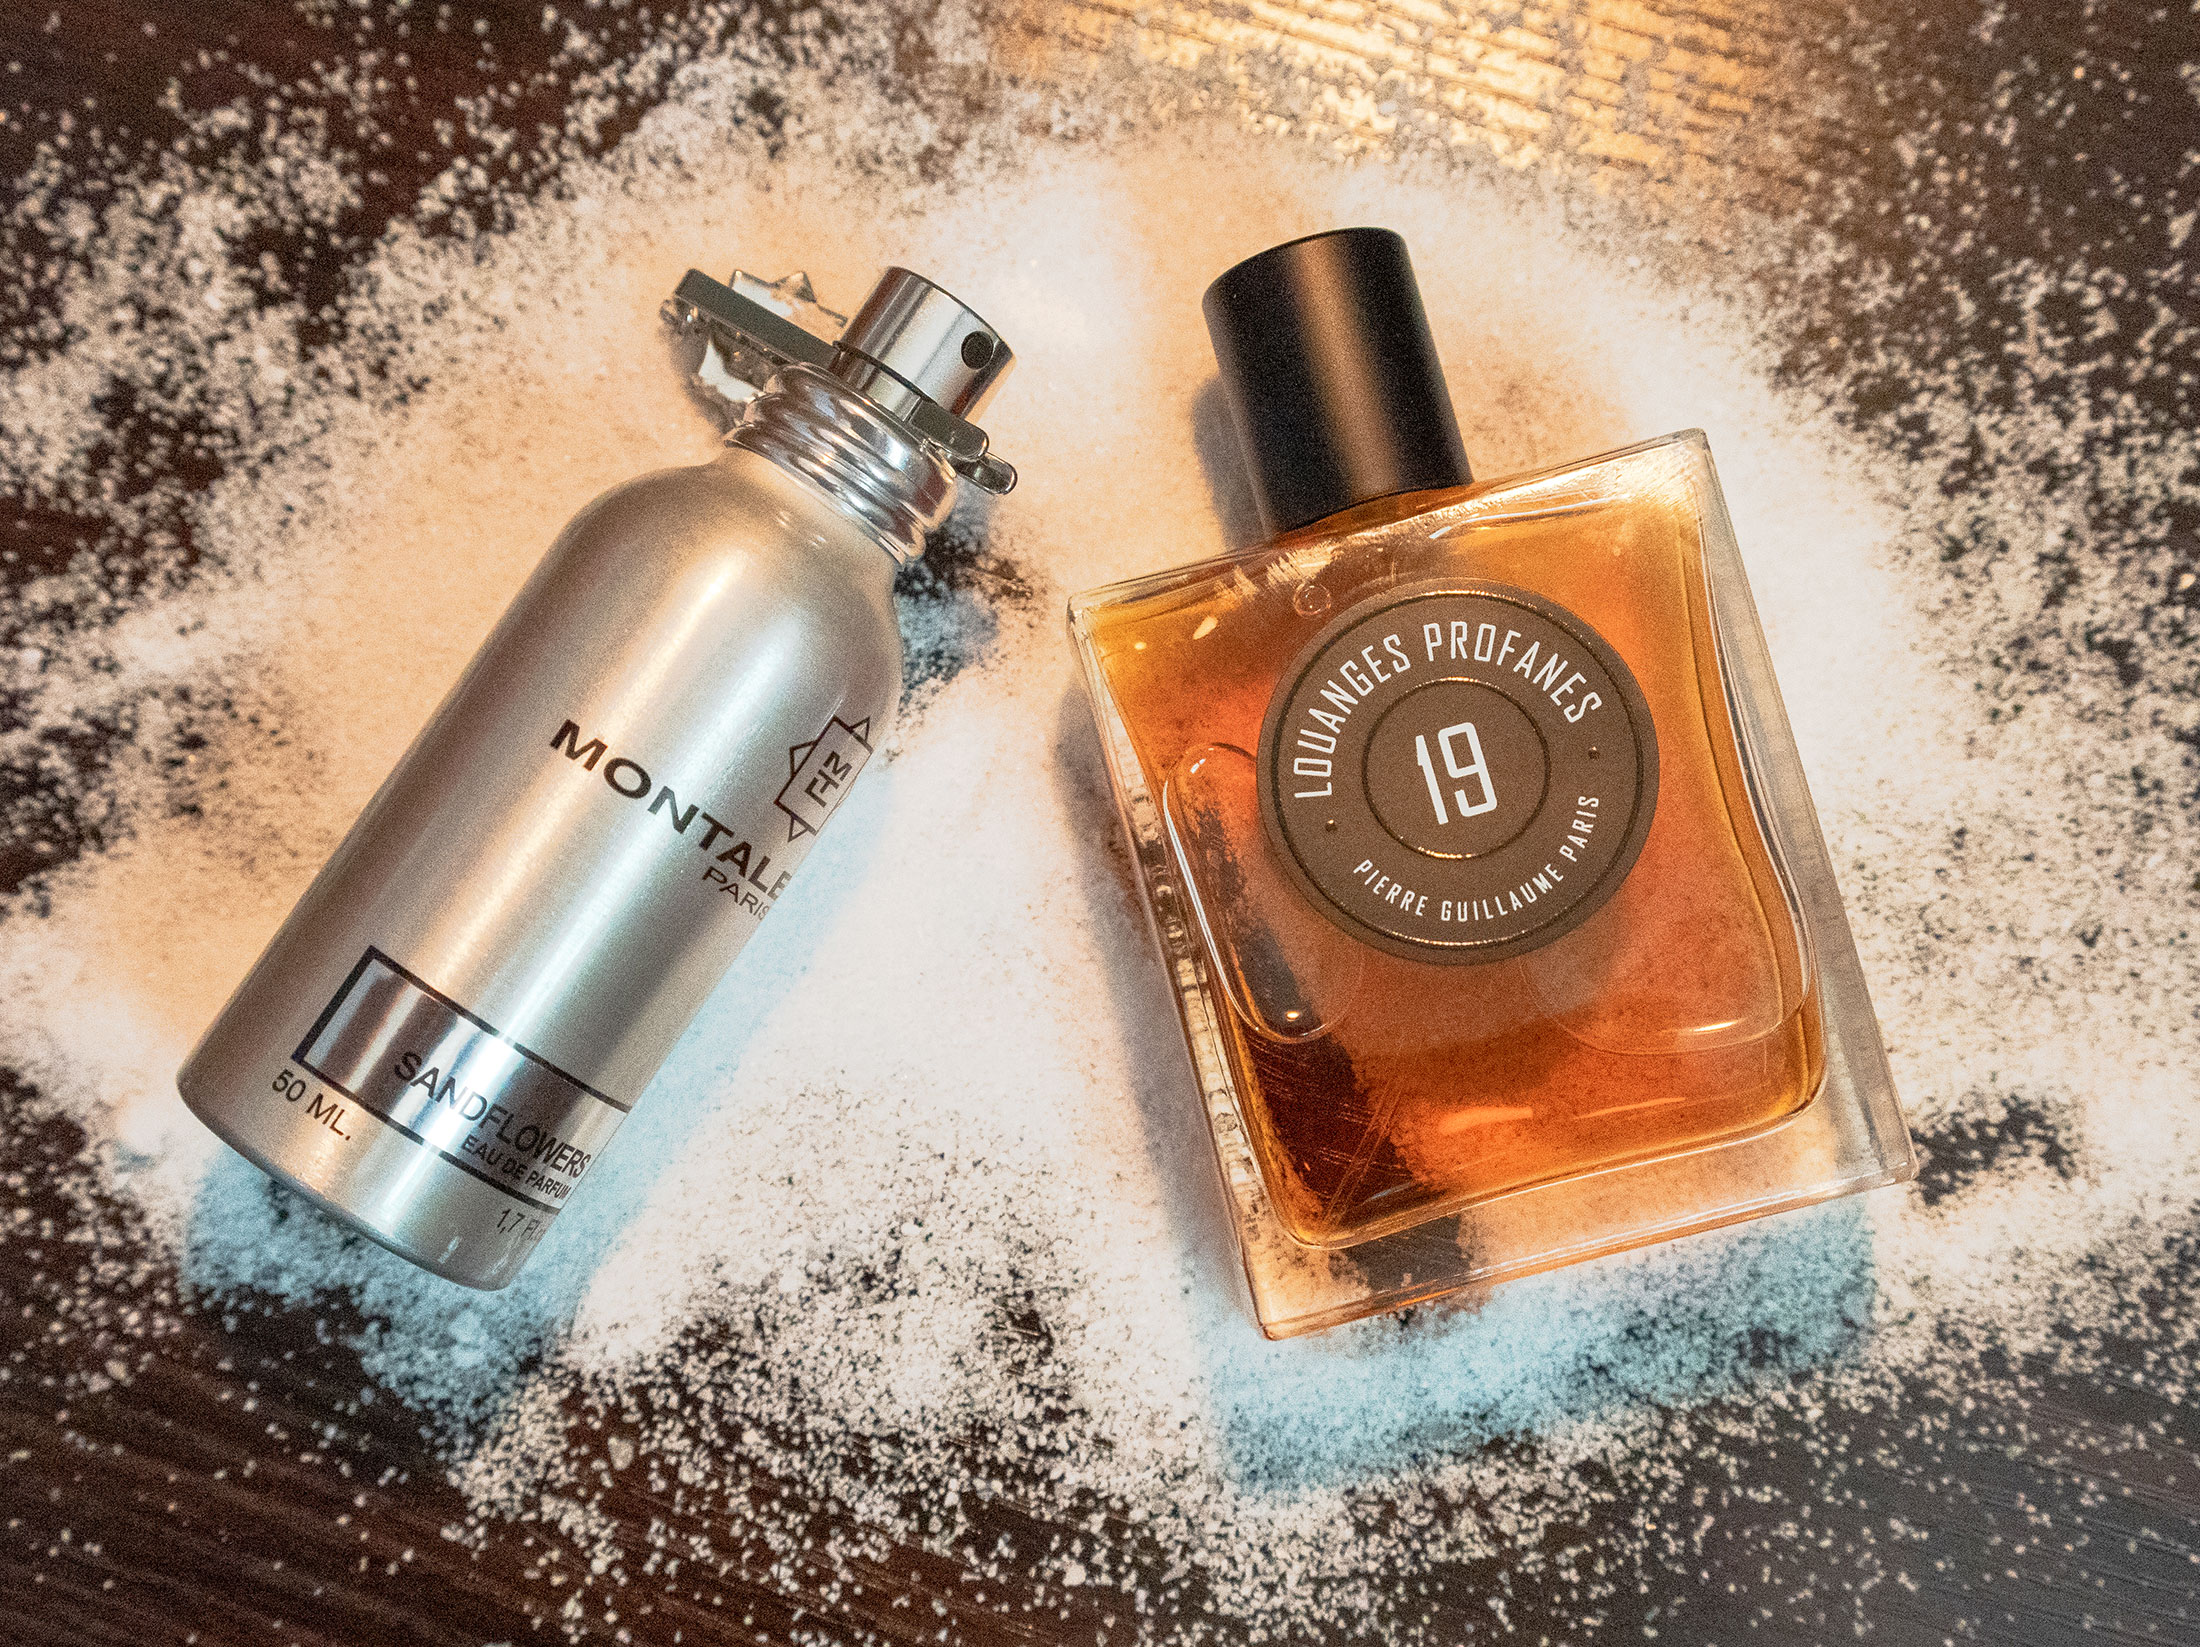 Louis Vuitton Men's Fragrance Reviews